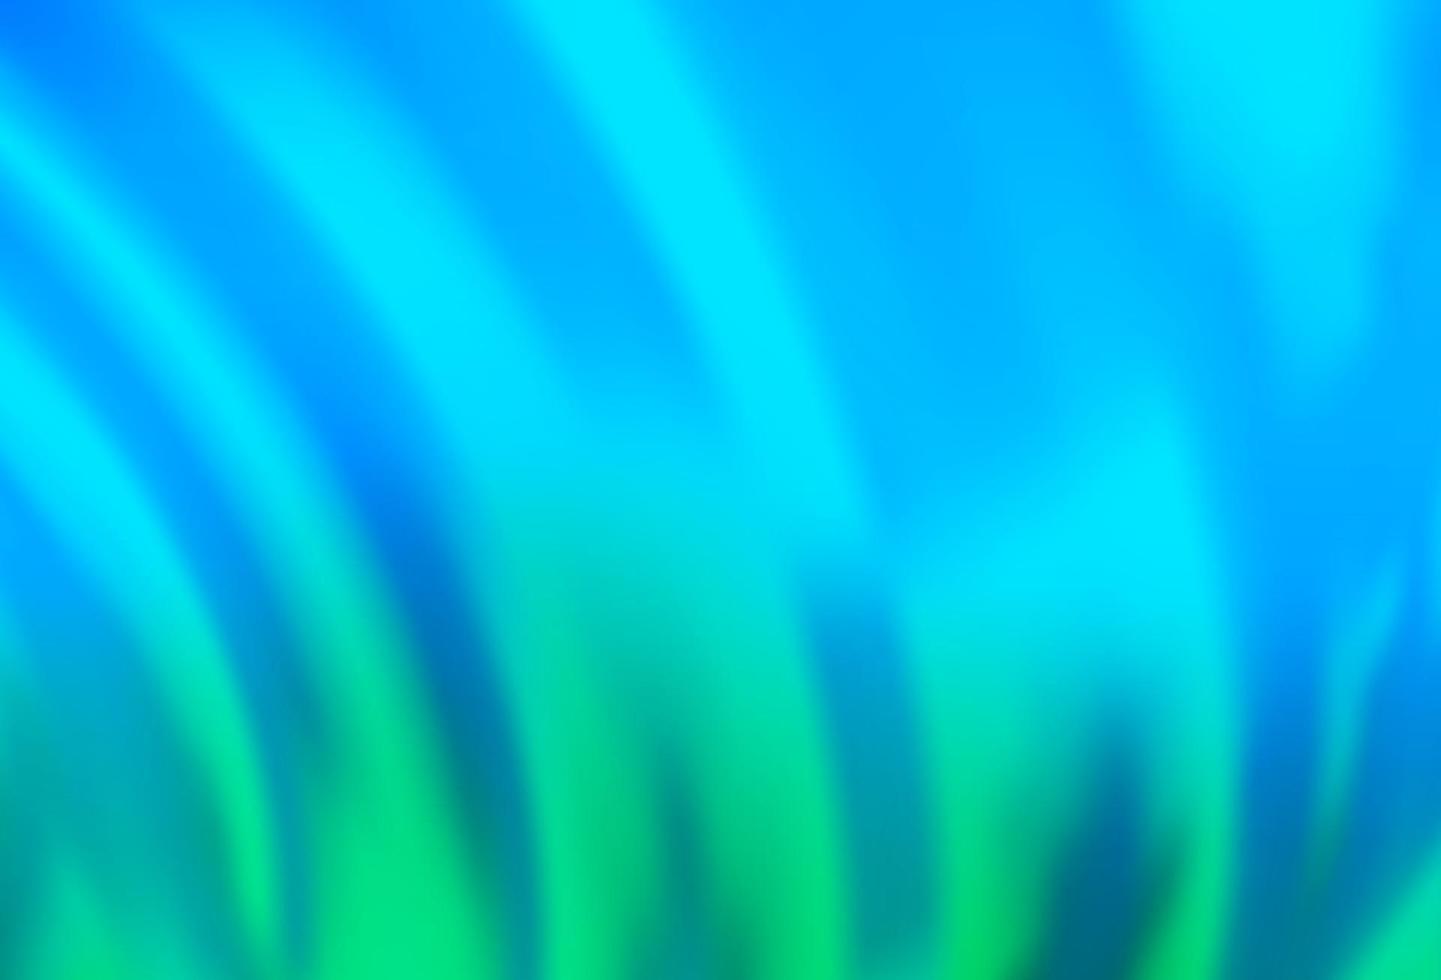 modelo de vetor azul claro e verde com linhas abstratas.